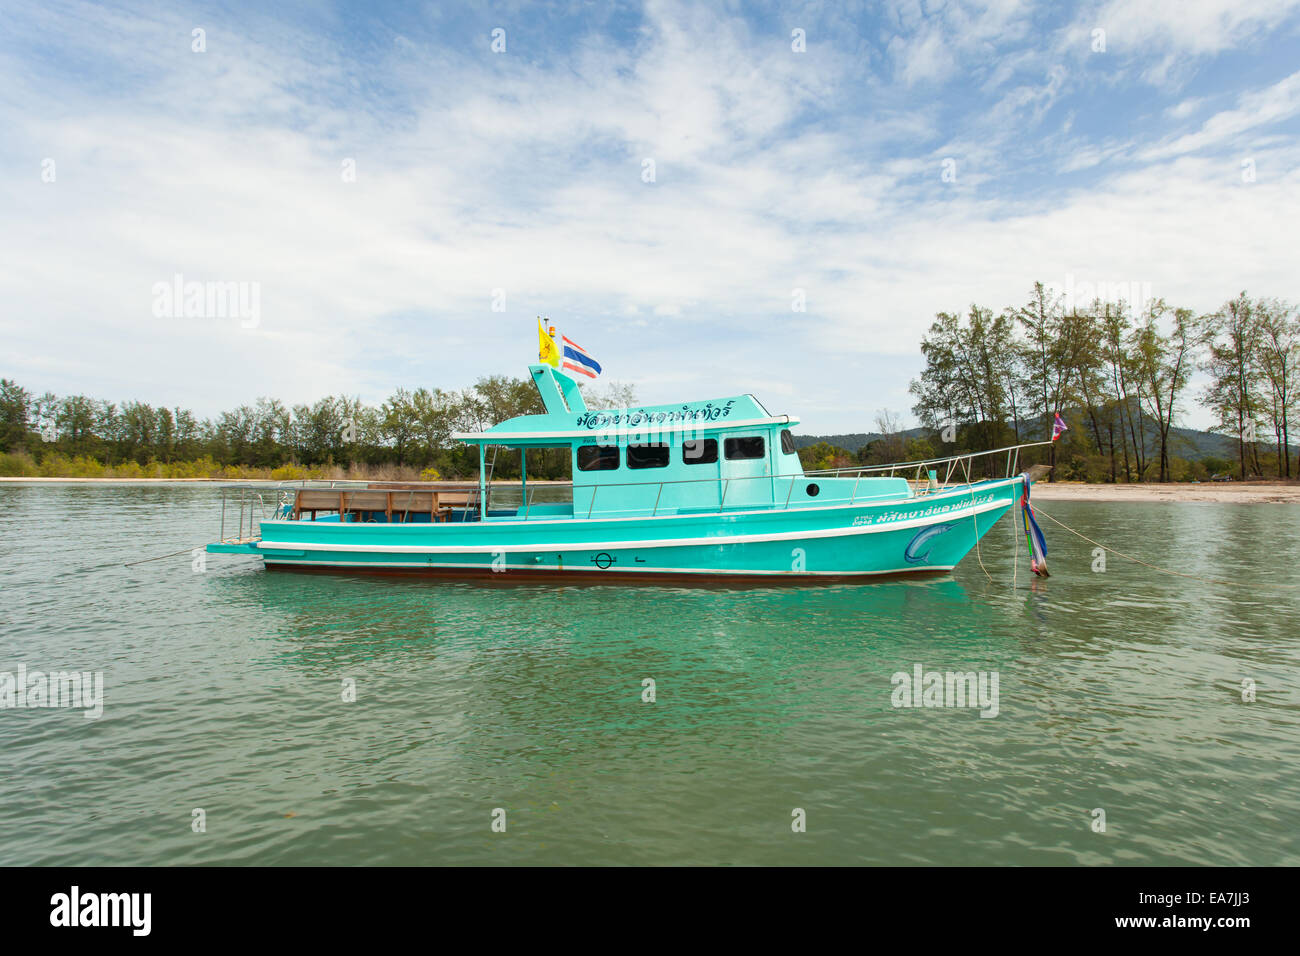 Tailandese tradizionale barca dalla coda lunga con isola thailandese in background Foto Stock